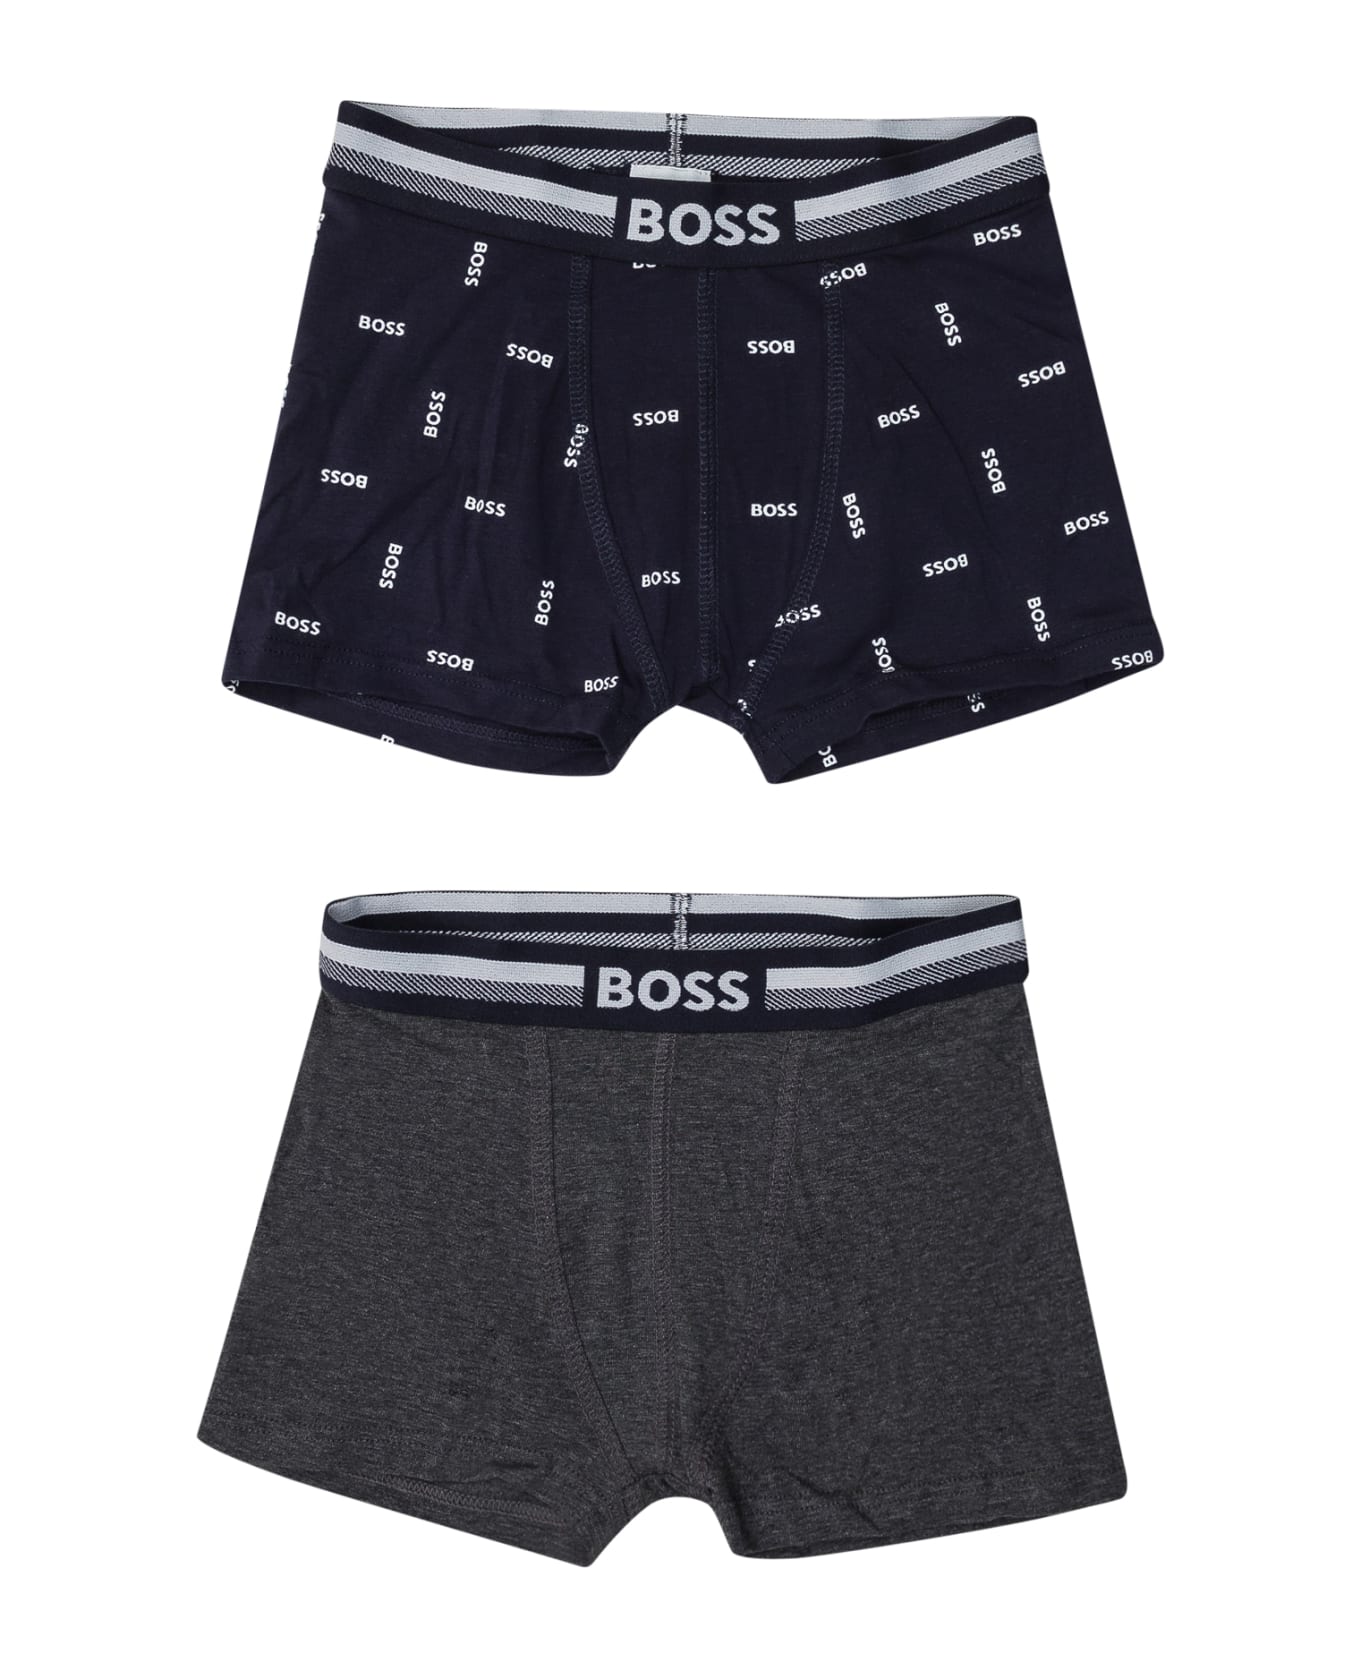 Hugo Boss Set 2 Boxer Shorts - MARINE アンダーウェア